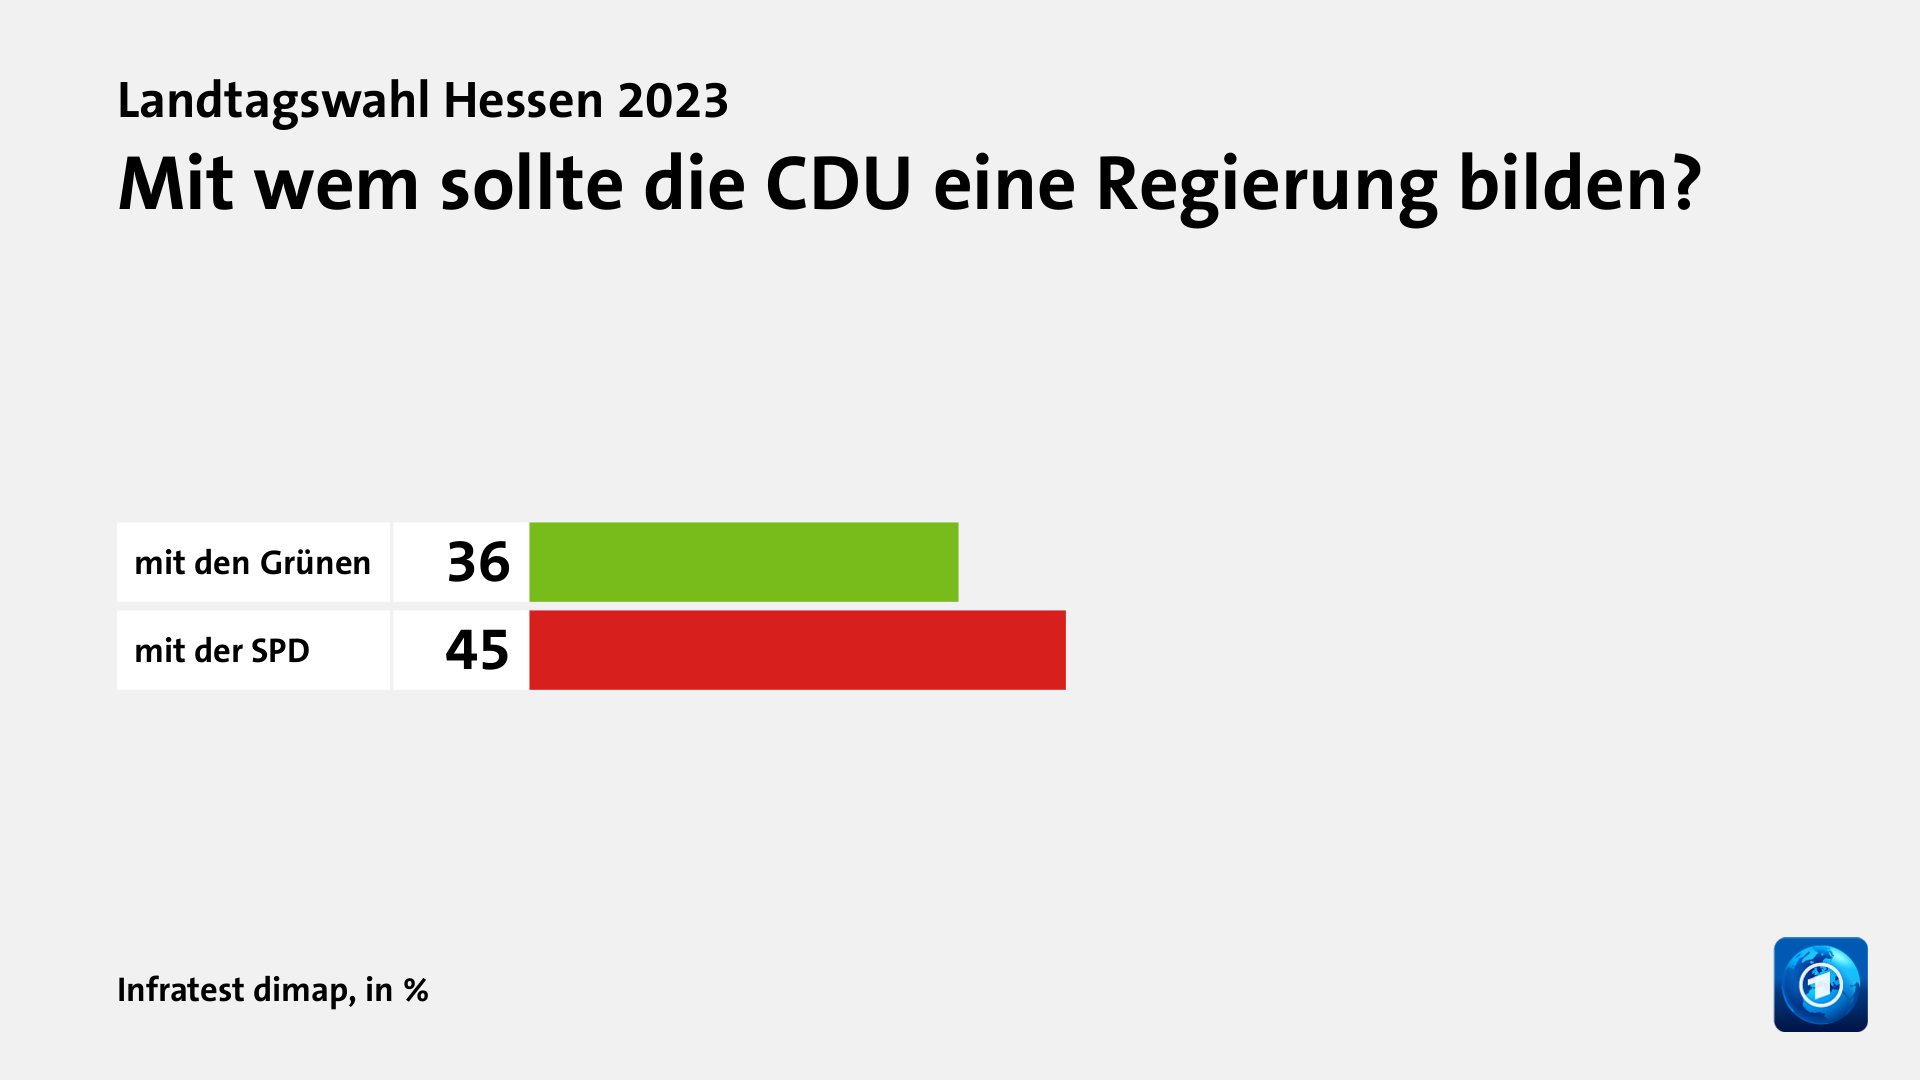 Mit wem sollte die CDU eine Regierung bilden?, in %: mit den Grünen 36, mit der SPD 45, Quelle: Infratest dimap